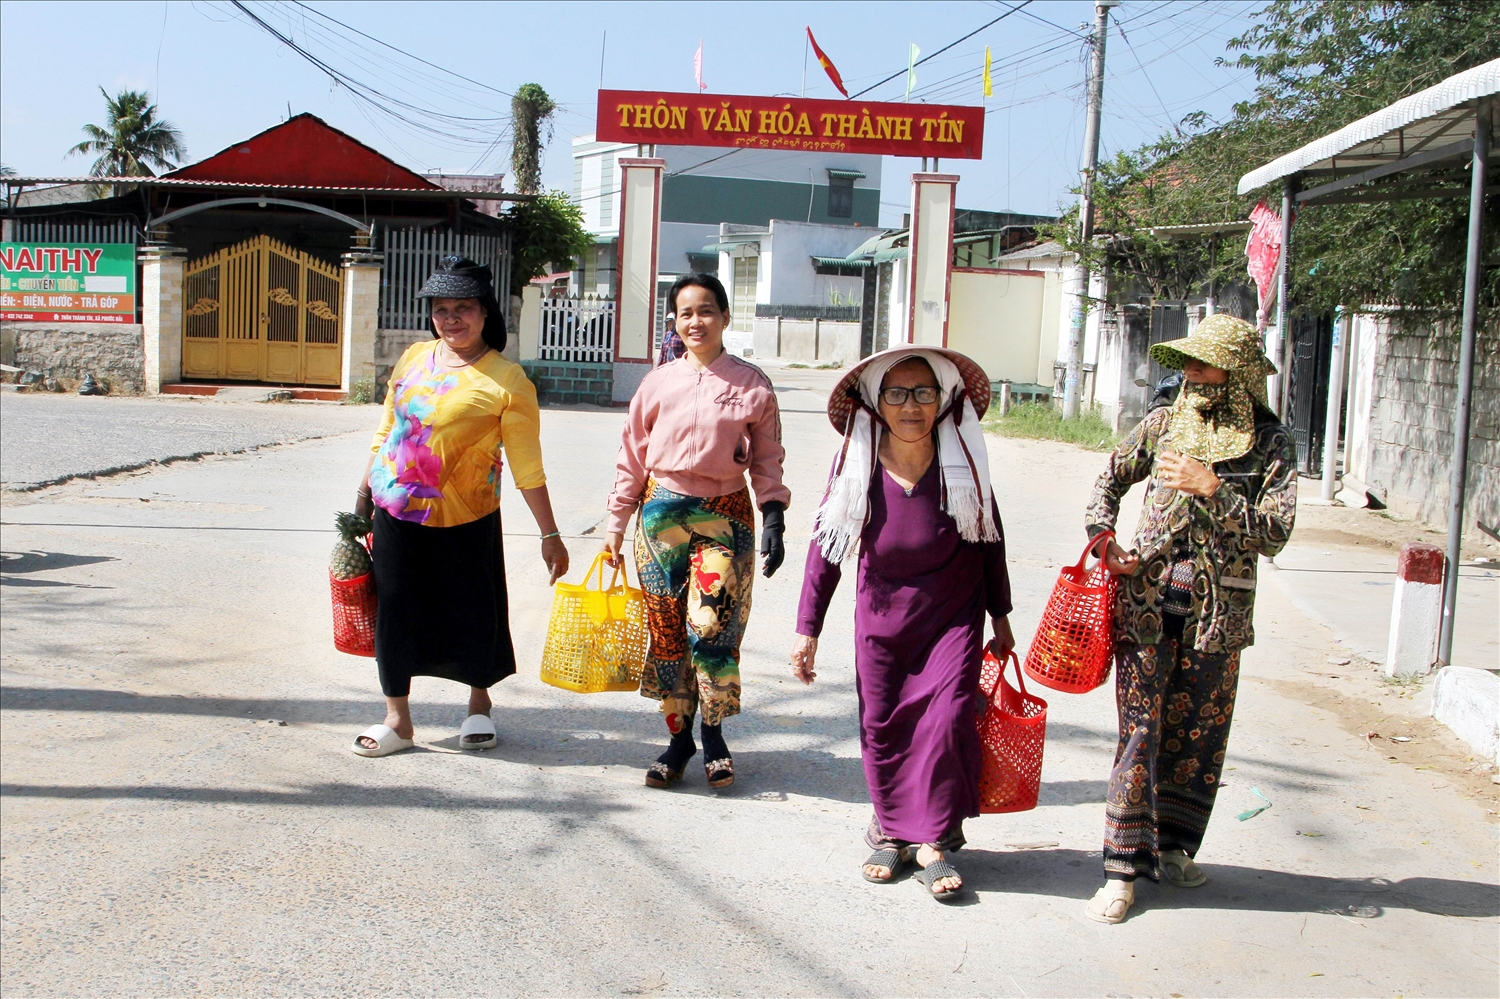 Được Người có uy tín Châu Văn Bính tuyên truyền, vận động, chị em phụ nữ thôn Thành Tín xách giỏ đi chợ, hạn chế sử dụng bao nylon ô nhiễm môi trường. 